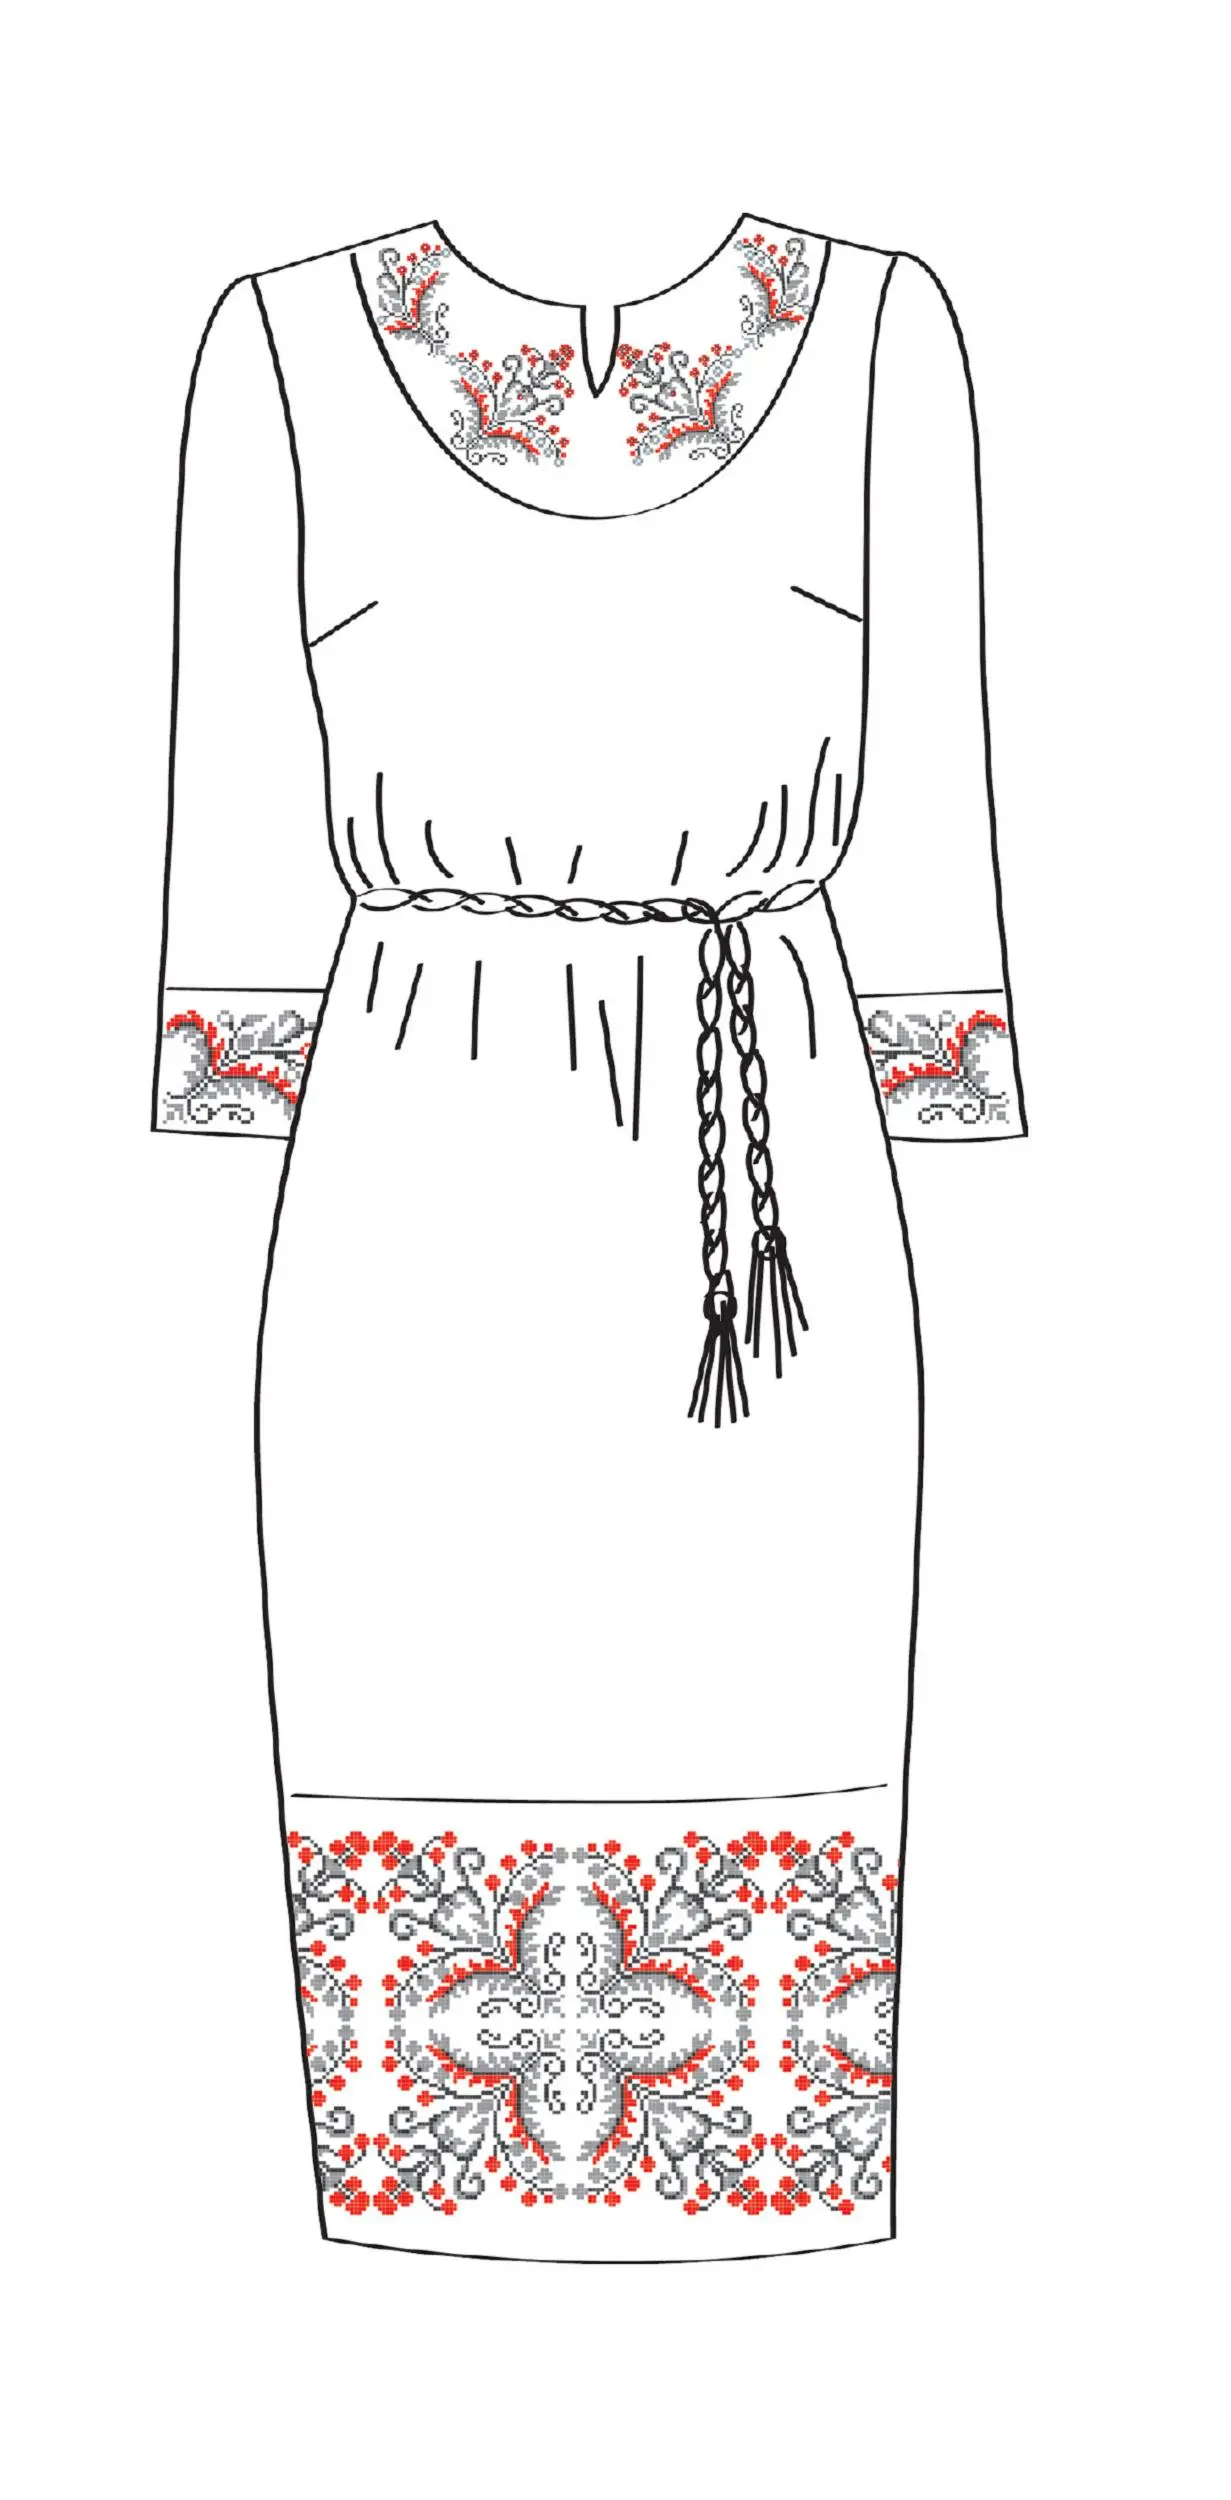 820-14/09 Плаття жіноче з поясом, біле, розмір 44